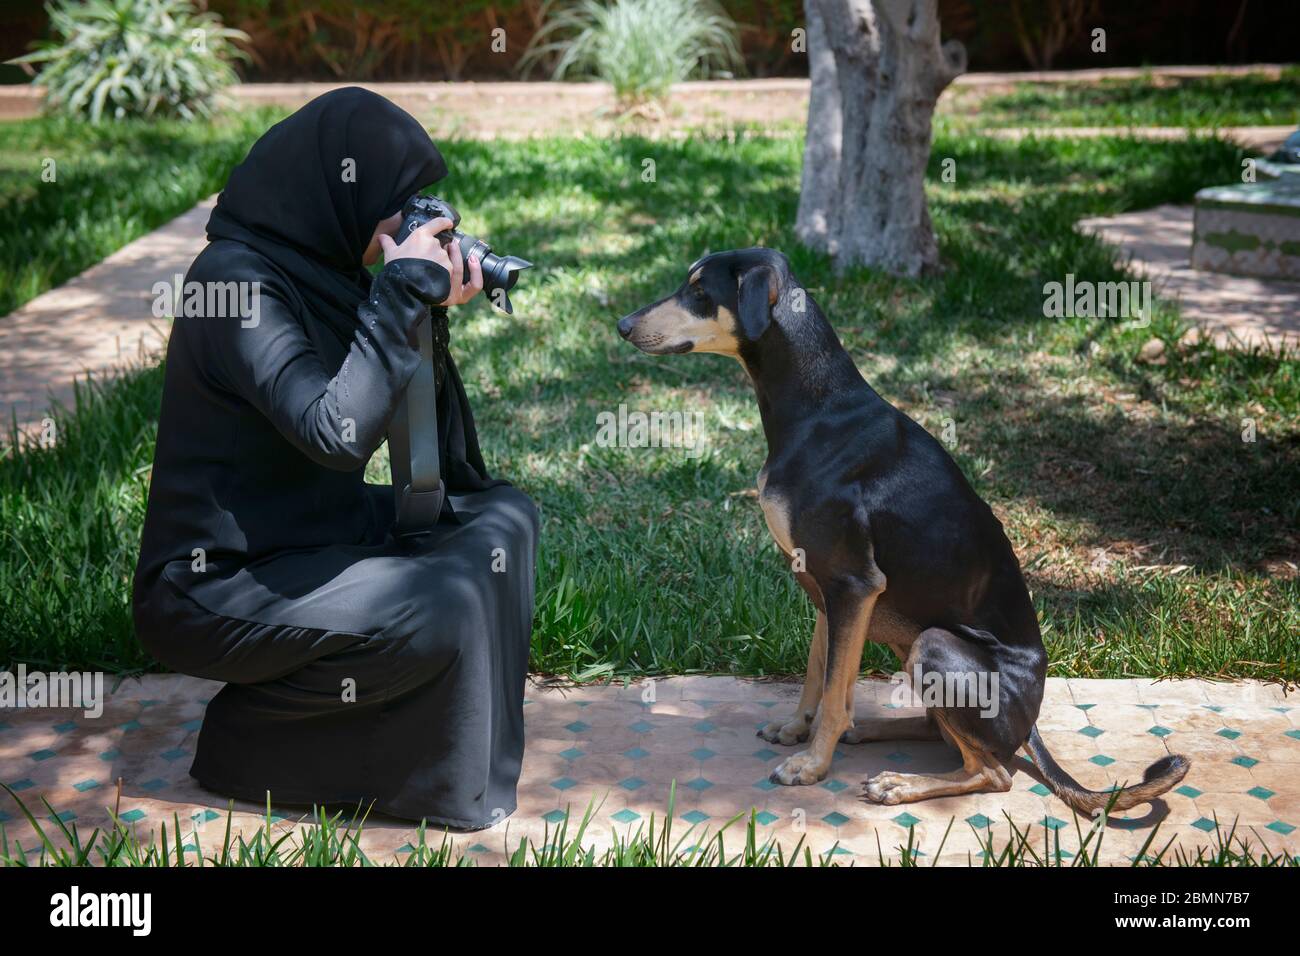 Schöne marokkanische arabische muslimische Frau mit dem traditionellen  schwarzen Niqab, fotografiert einen gehorsamen jungen Sloughi Hund ( arabischer Windhund Stockfotografie - Alamy